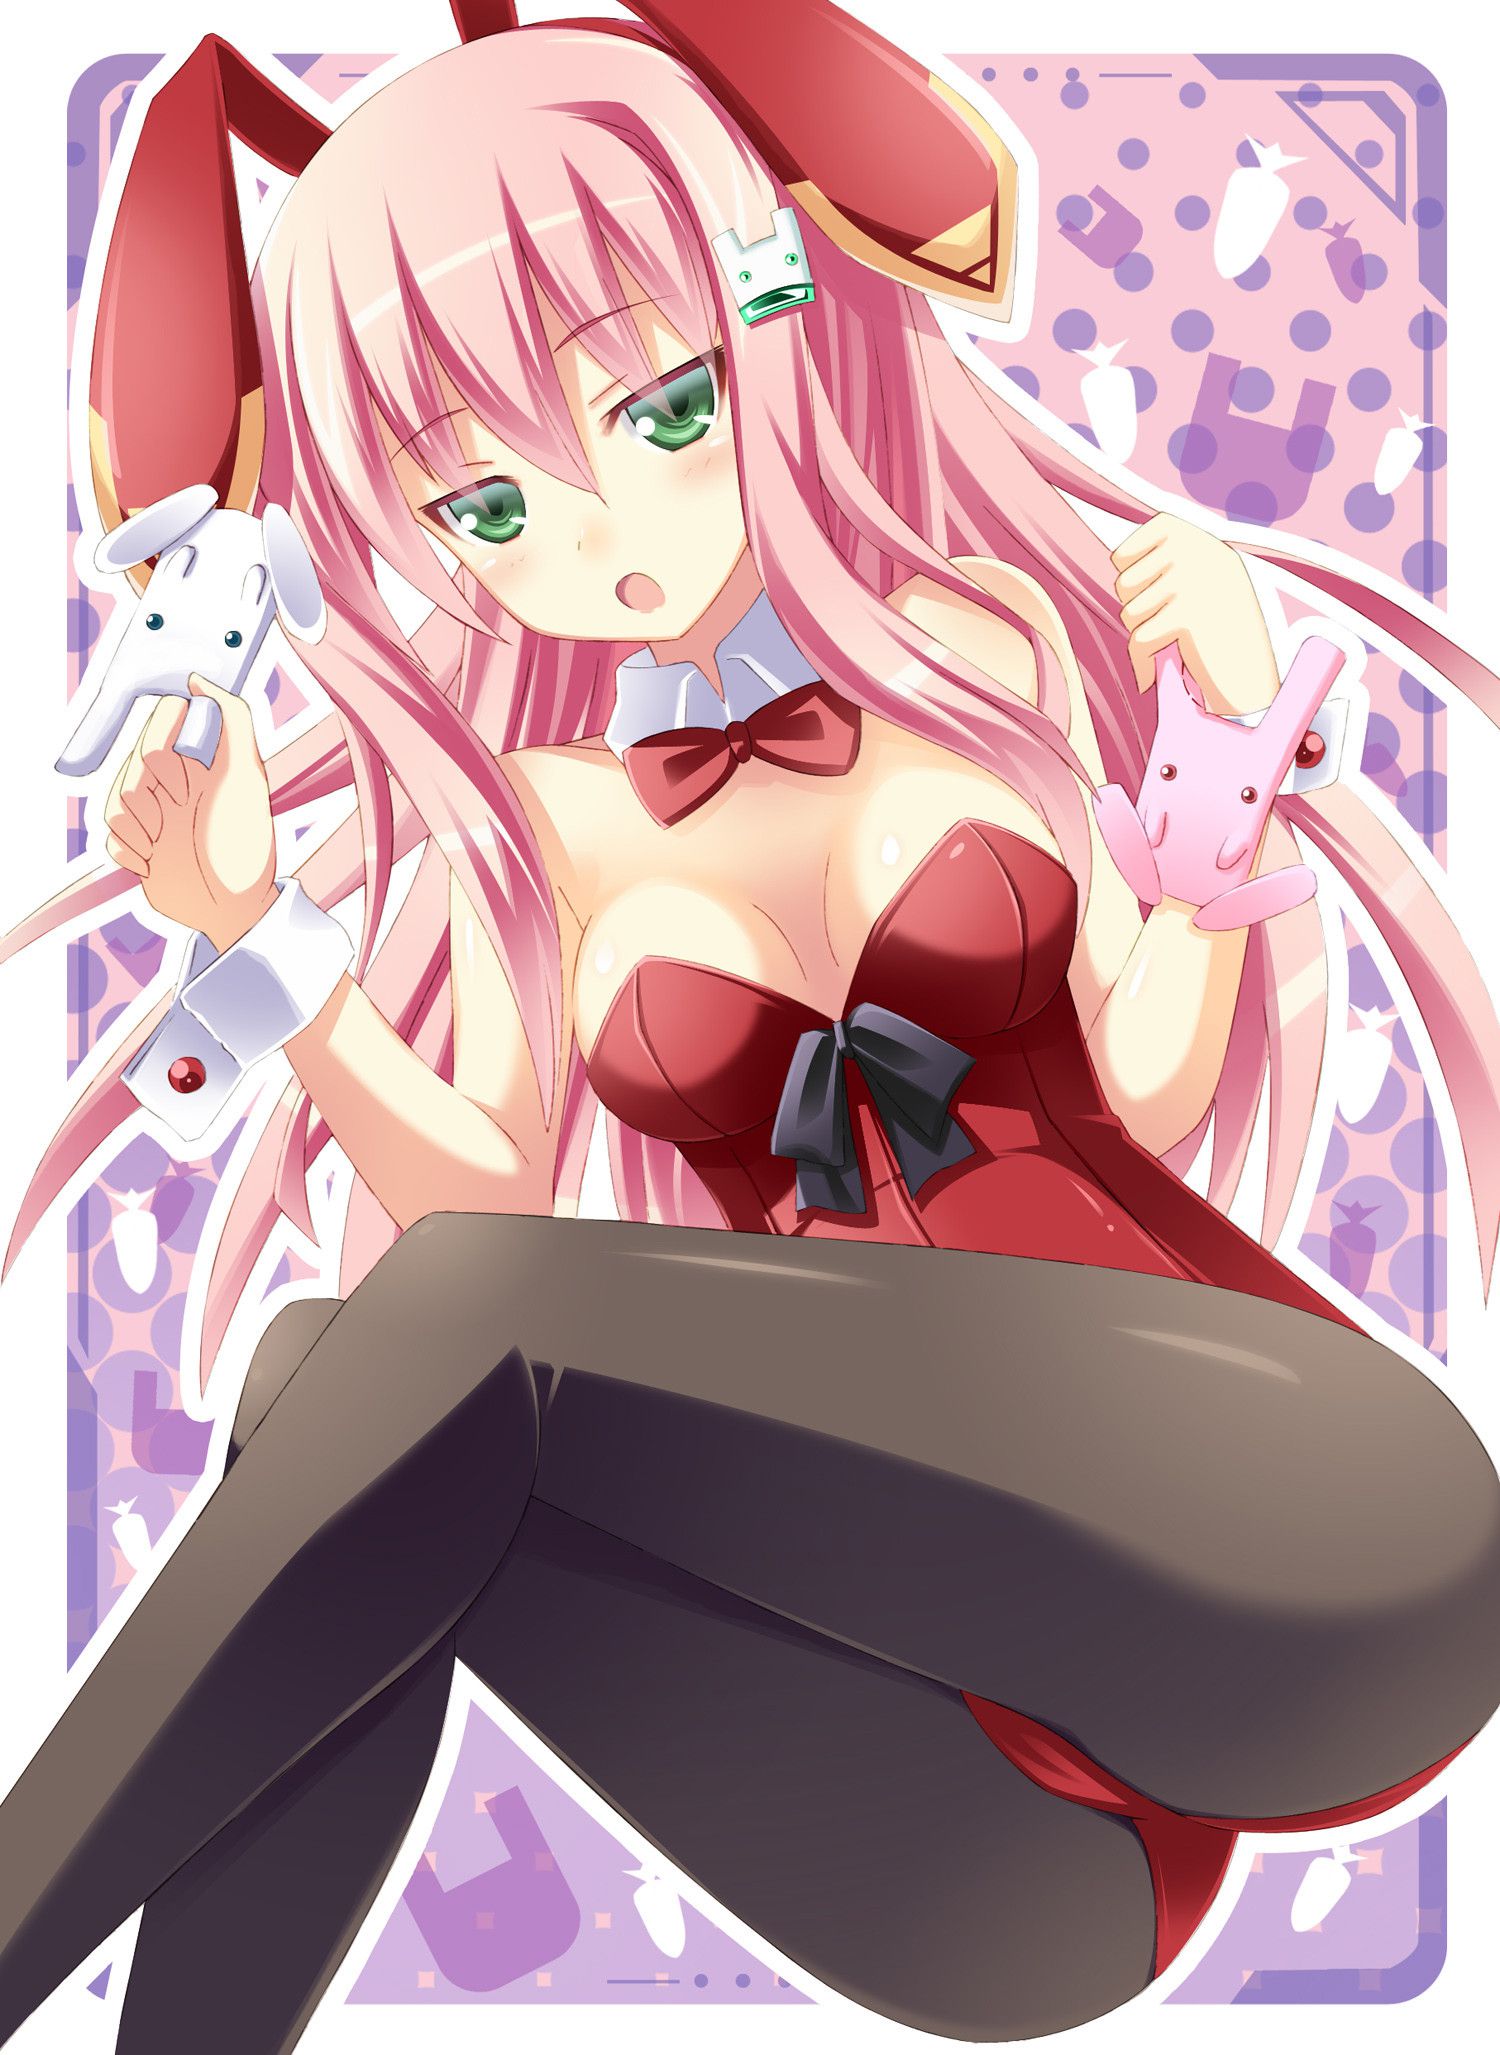 Bunny girl image 17